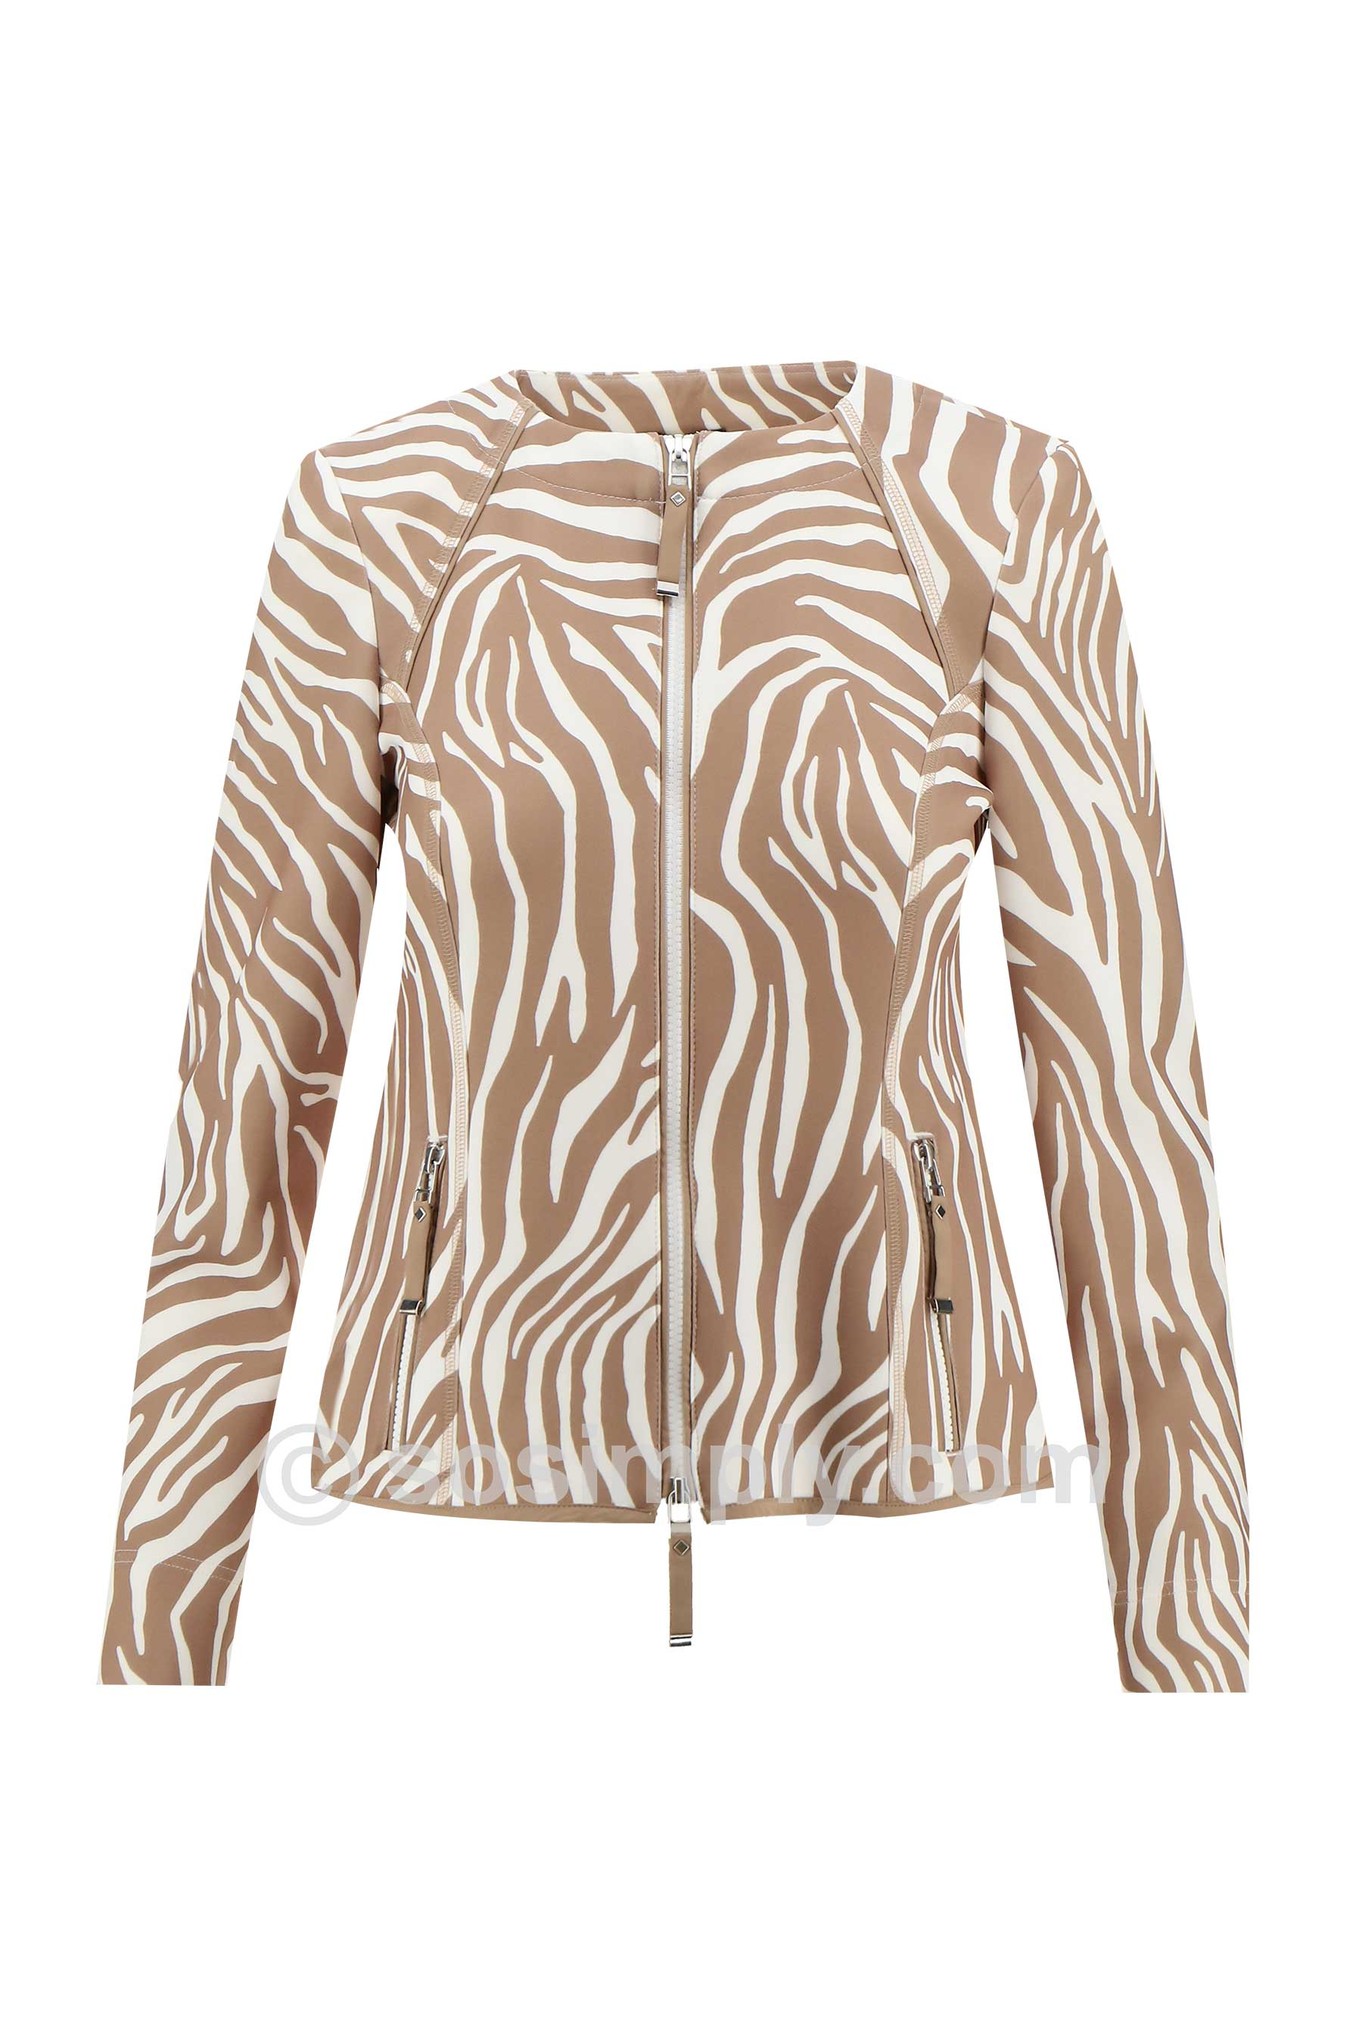 I’cona Zebra Luxe Zip Up Jacket